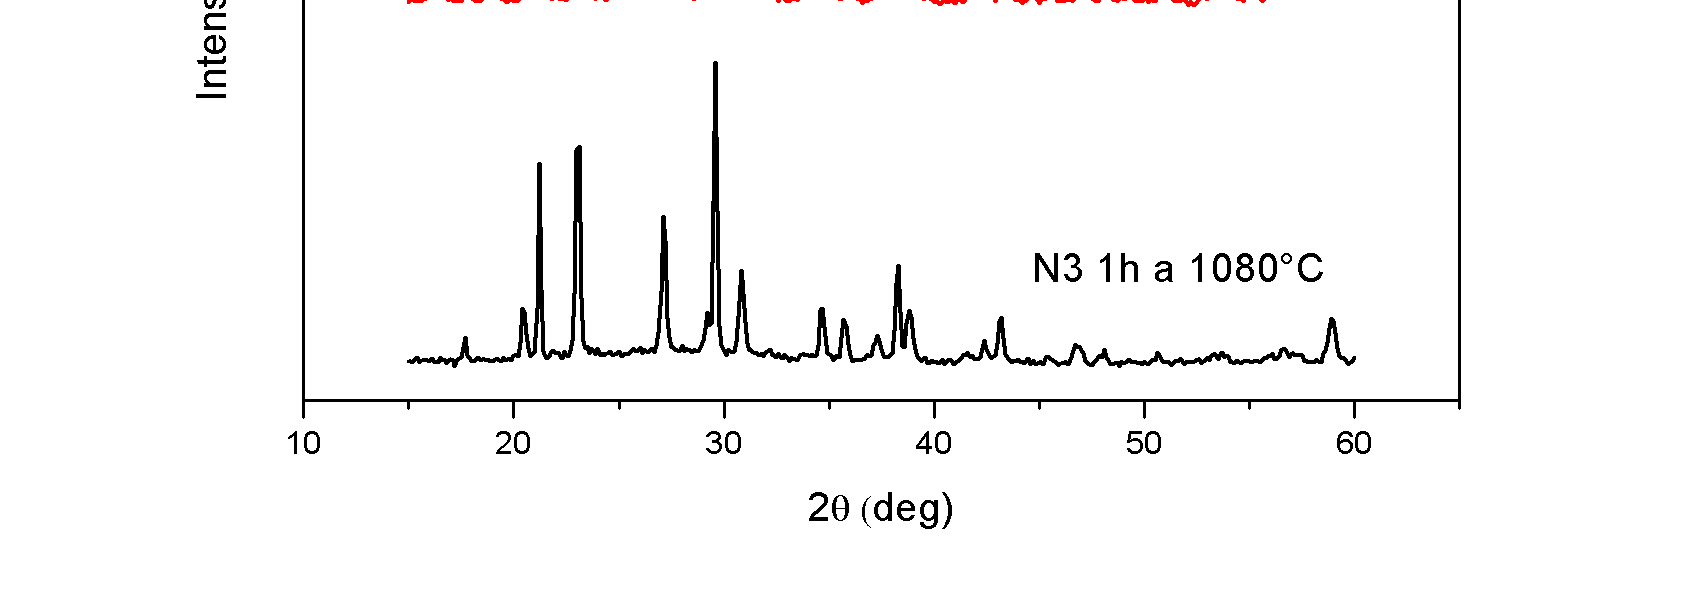 Sintercristallizzazione e tempra chimica di vetroceramiche a base di nefelina 61 maggiore di picchi dati dalla presenza della fase cristallina leucite, come evidenziato in figura 3.17. Figura 3.